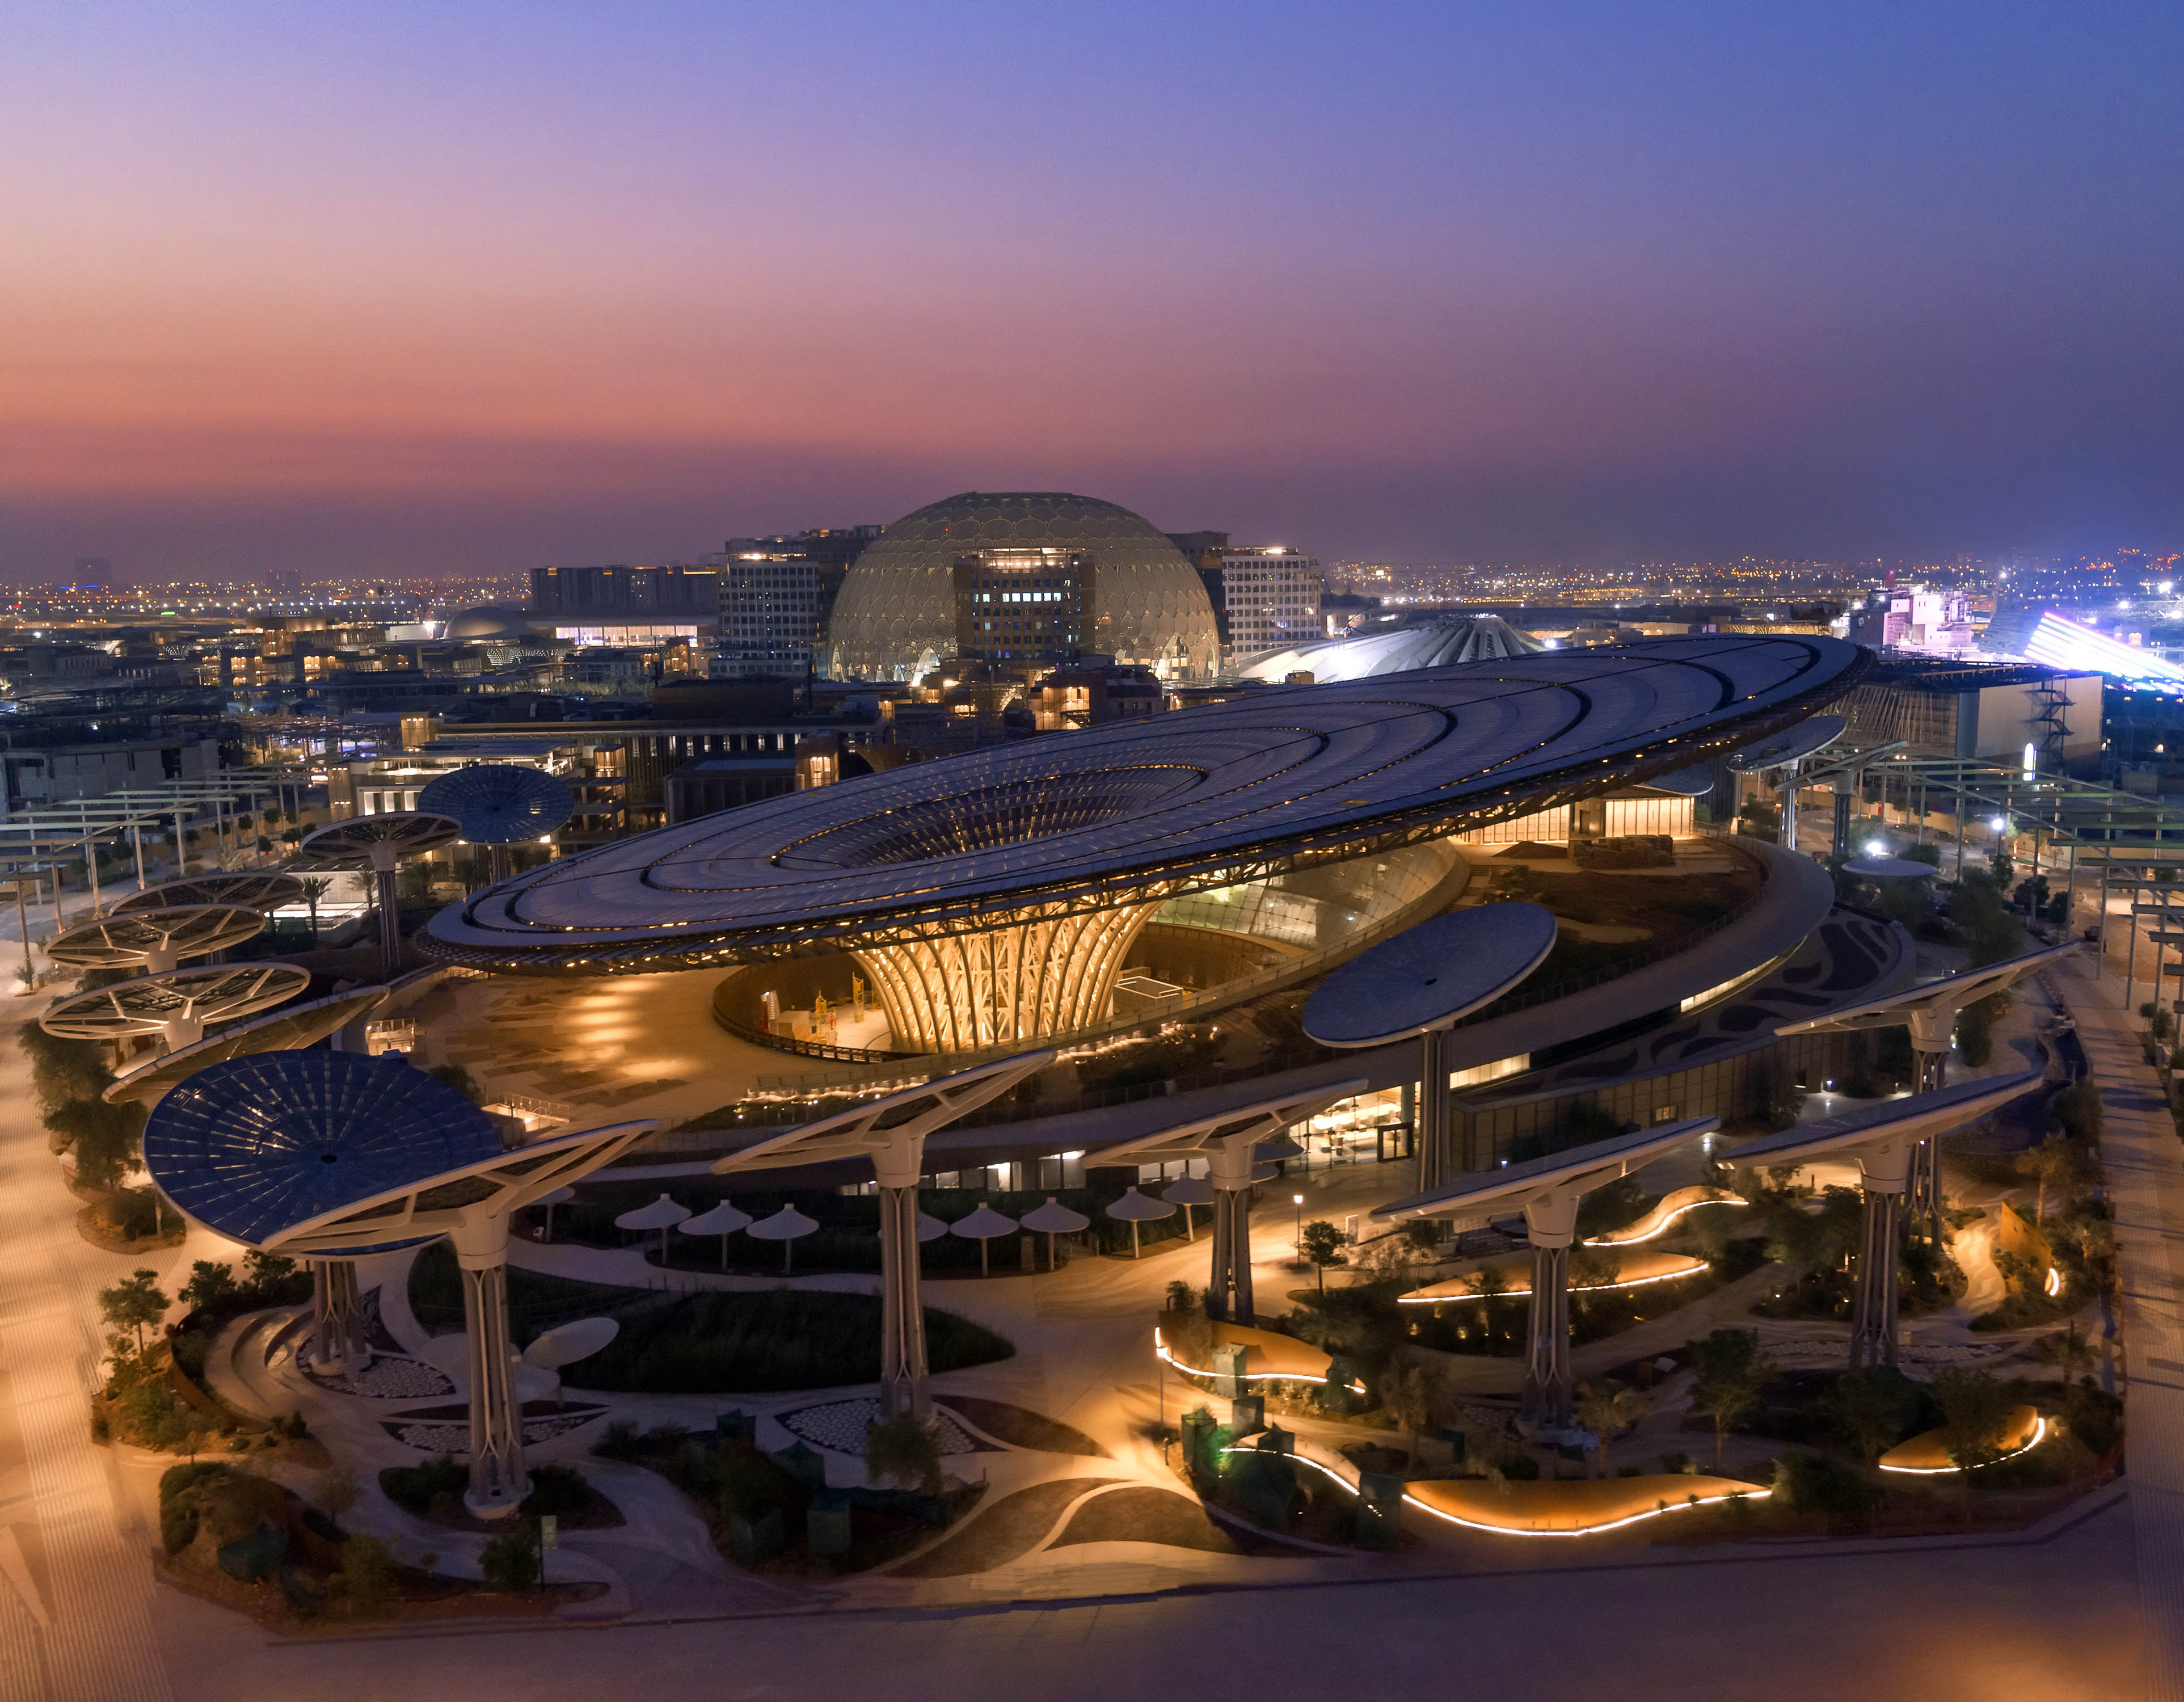 Discover Expo 2020 Dubai